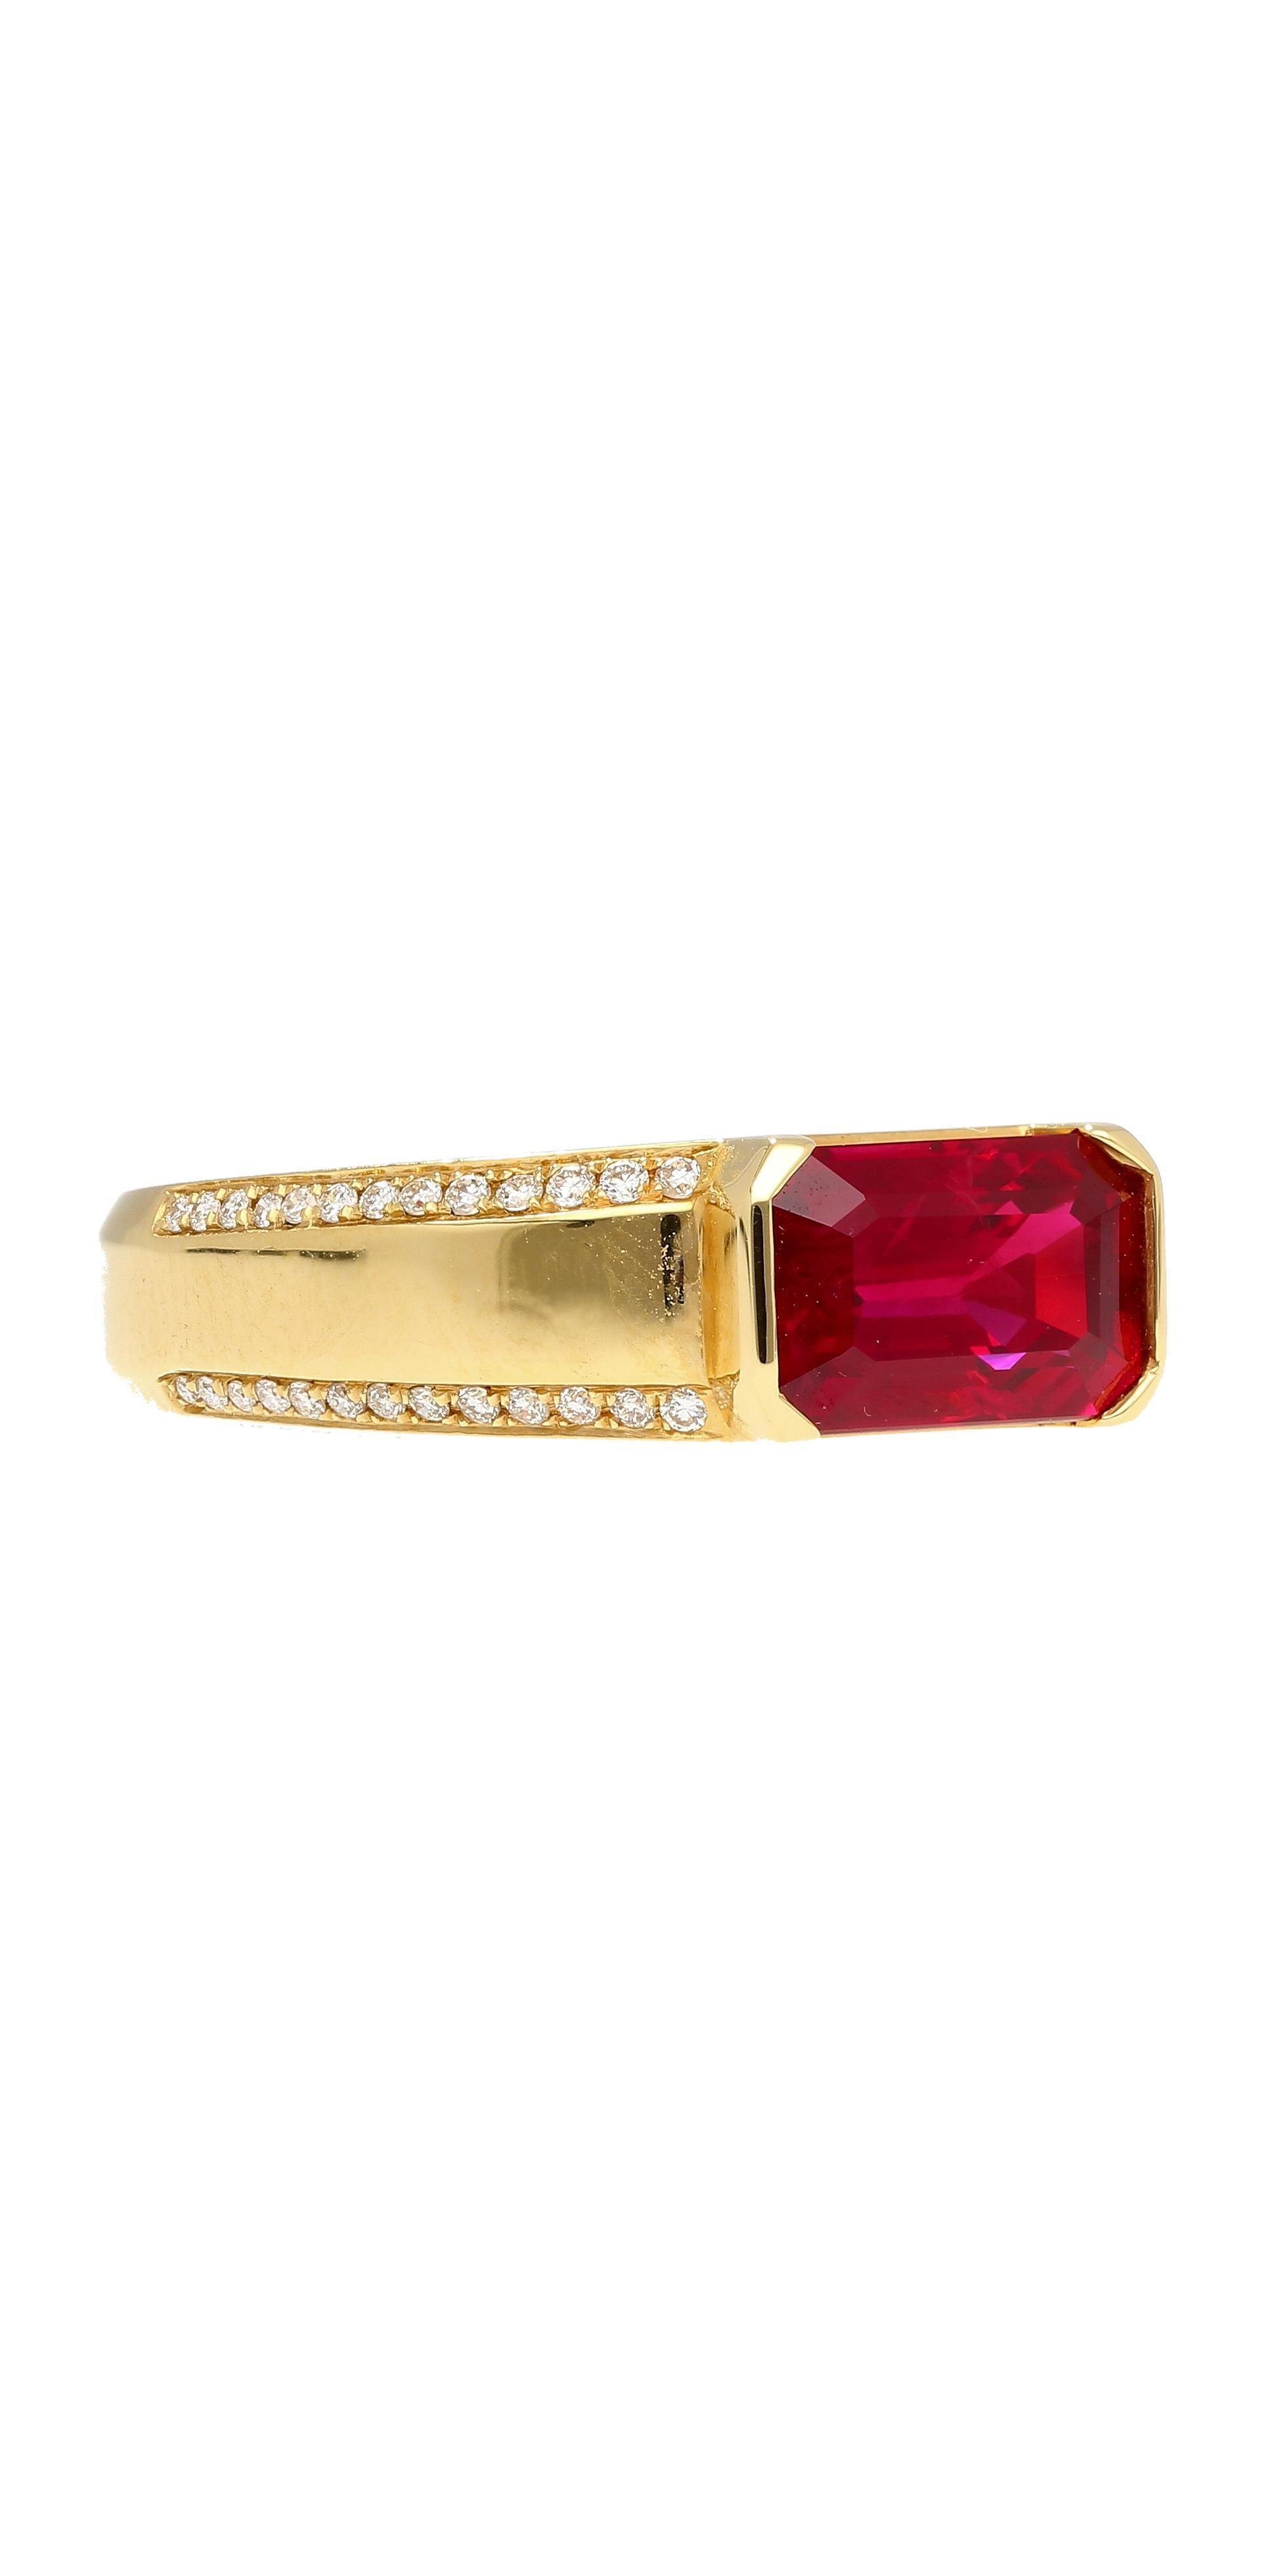 GIA und GRS zertifiziert 2,09 Karat Smaragd Schliff Rubin und Diamant East West Ring in 18K Solid Gelbgold. 

Dieser wichtige Rubin Mittelstein ist eine zertifizierte Vivid Red Pigeons Blood Farbe. Dieser Burma-Rubin weist einen lebhaften, leuchtend